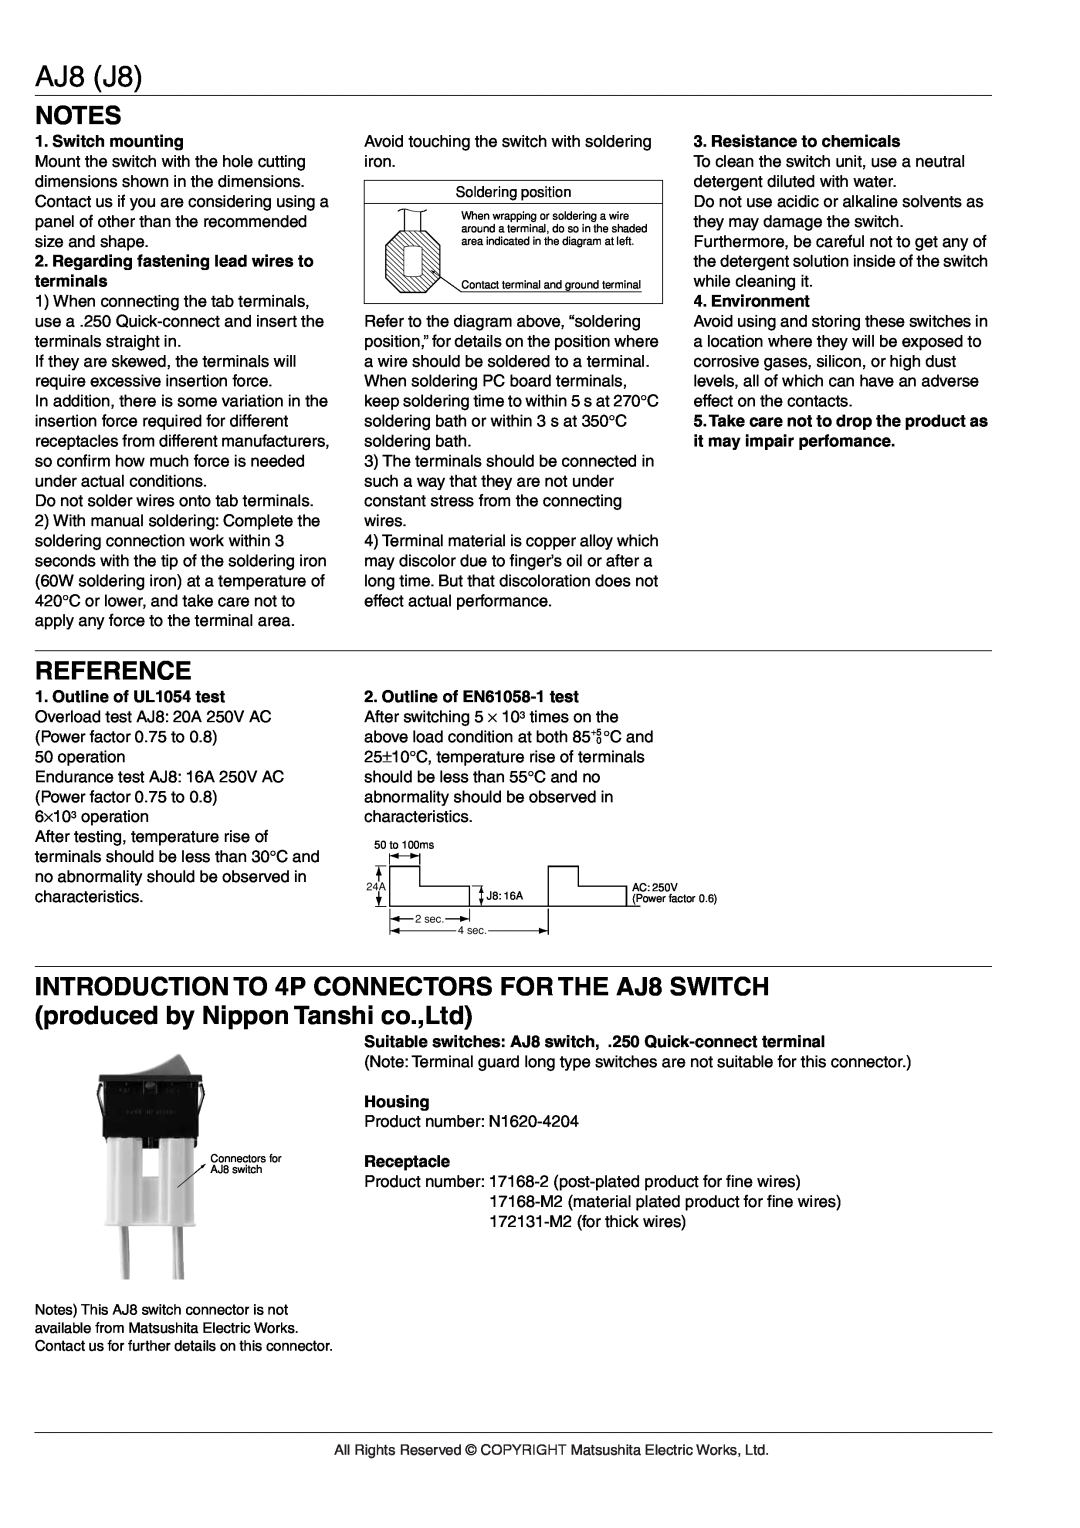 Panasonic AJ8 (J8) manual Reference, AJ8 J8 